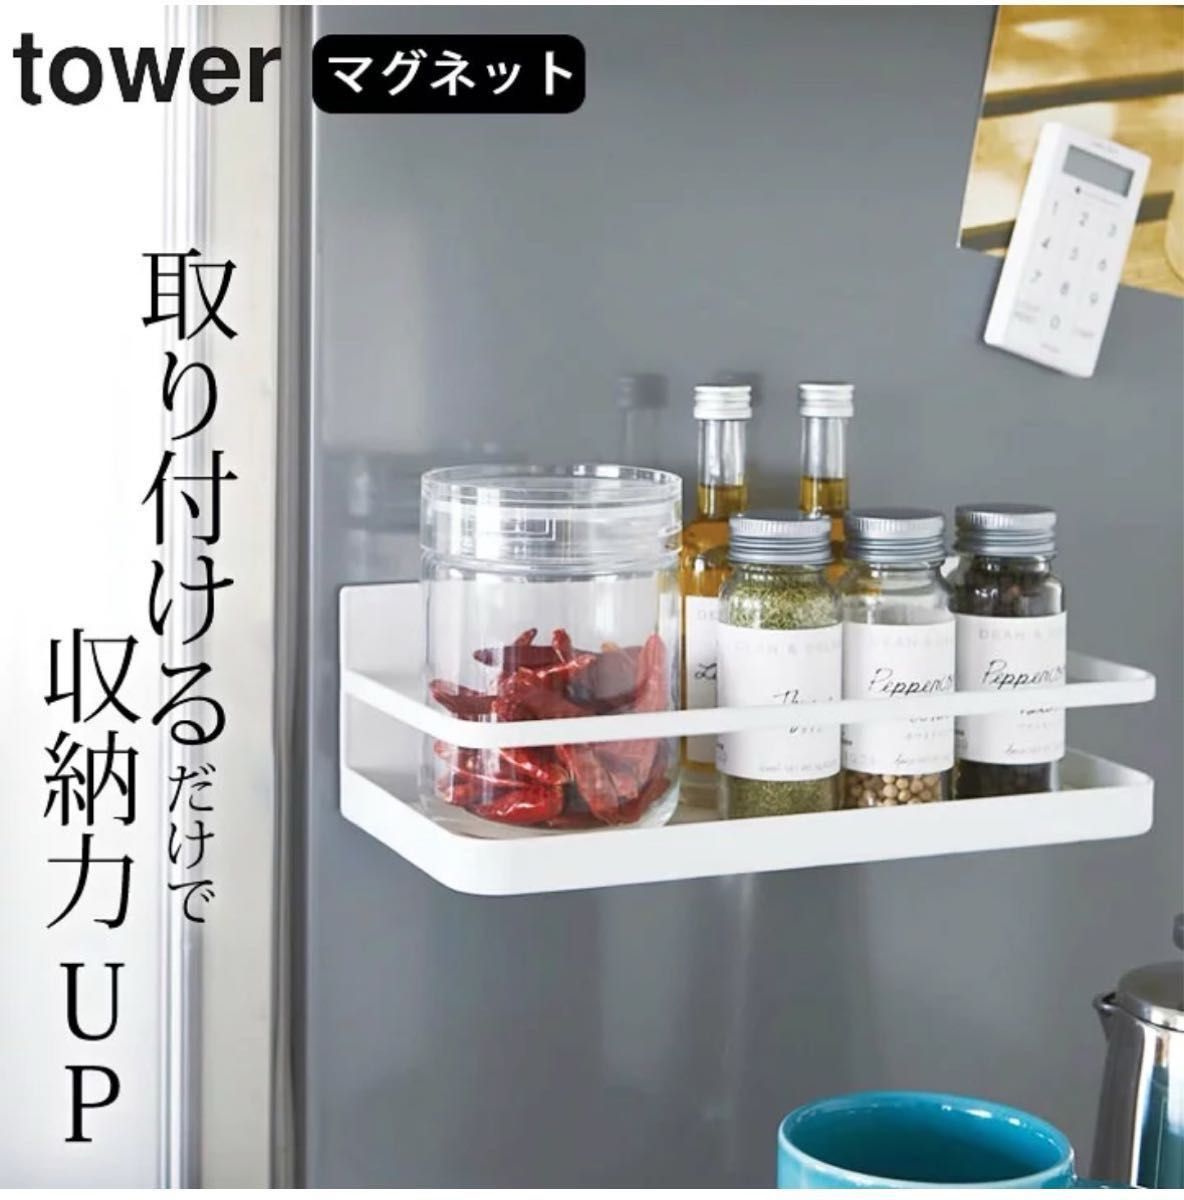 山崎実業 tower 5点セット 歯ブラシスタンド ハンガーラック キッチン用品 ホワイト ラック 洗濯機 冷蔵庫 洗面 キッチン